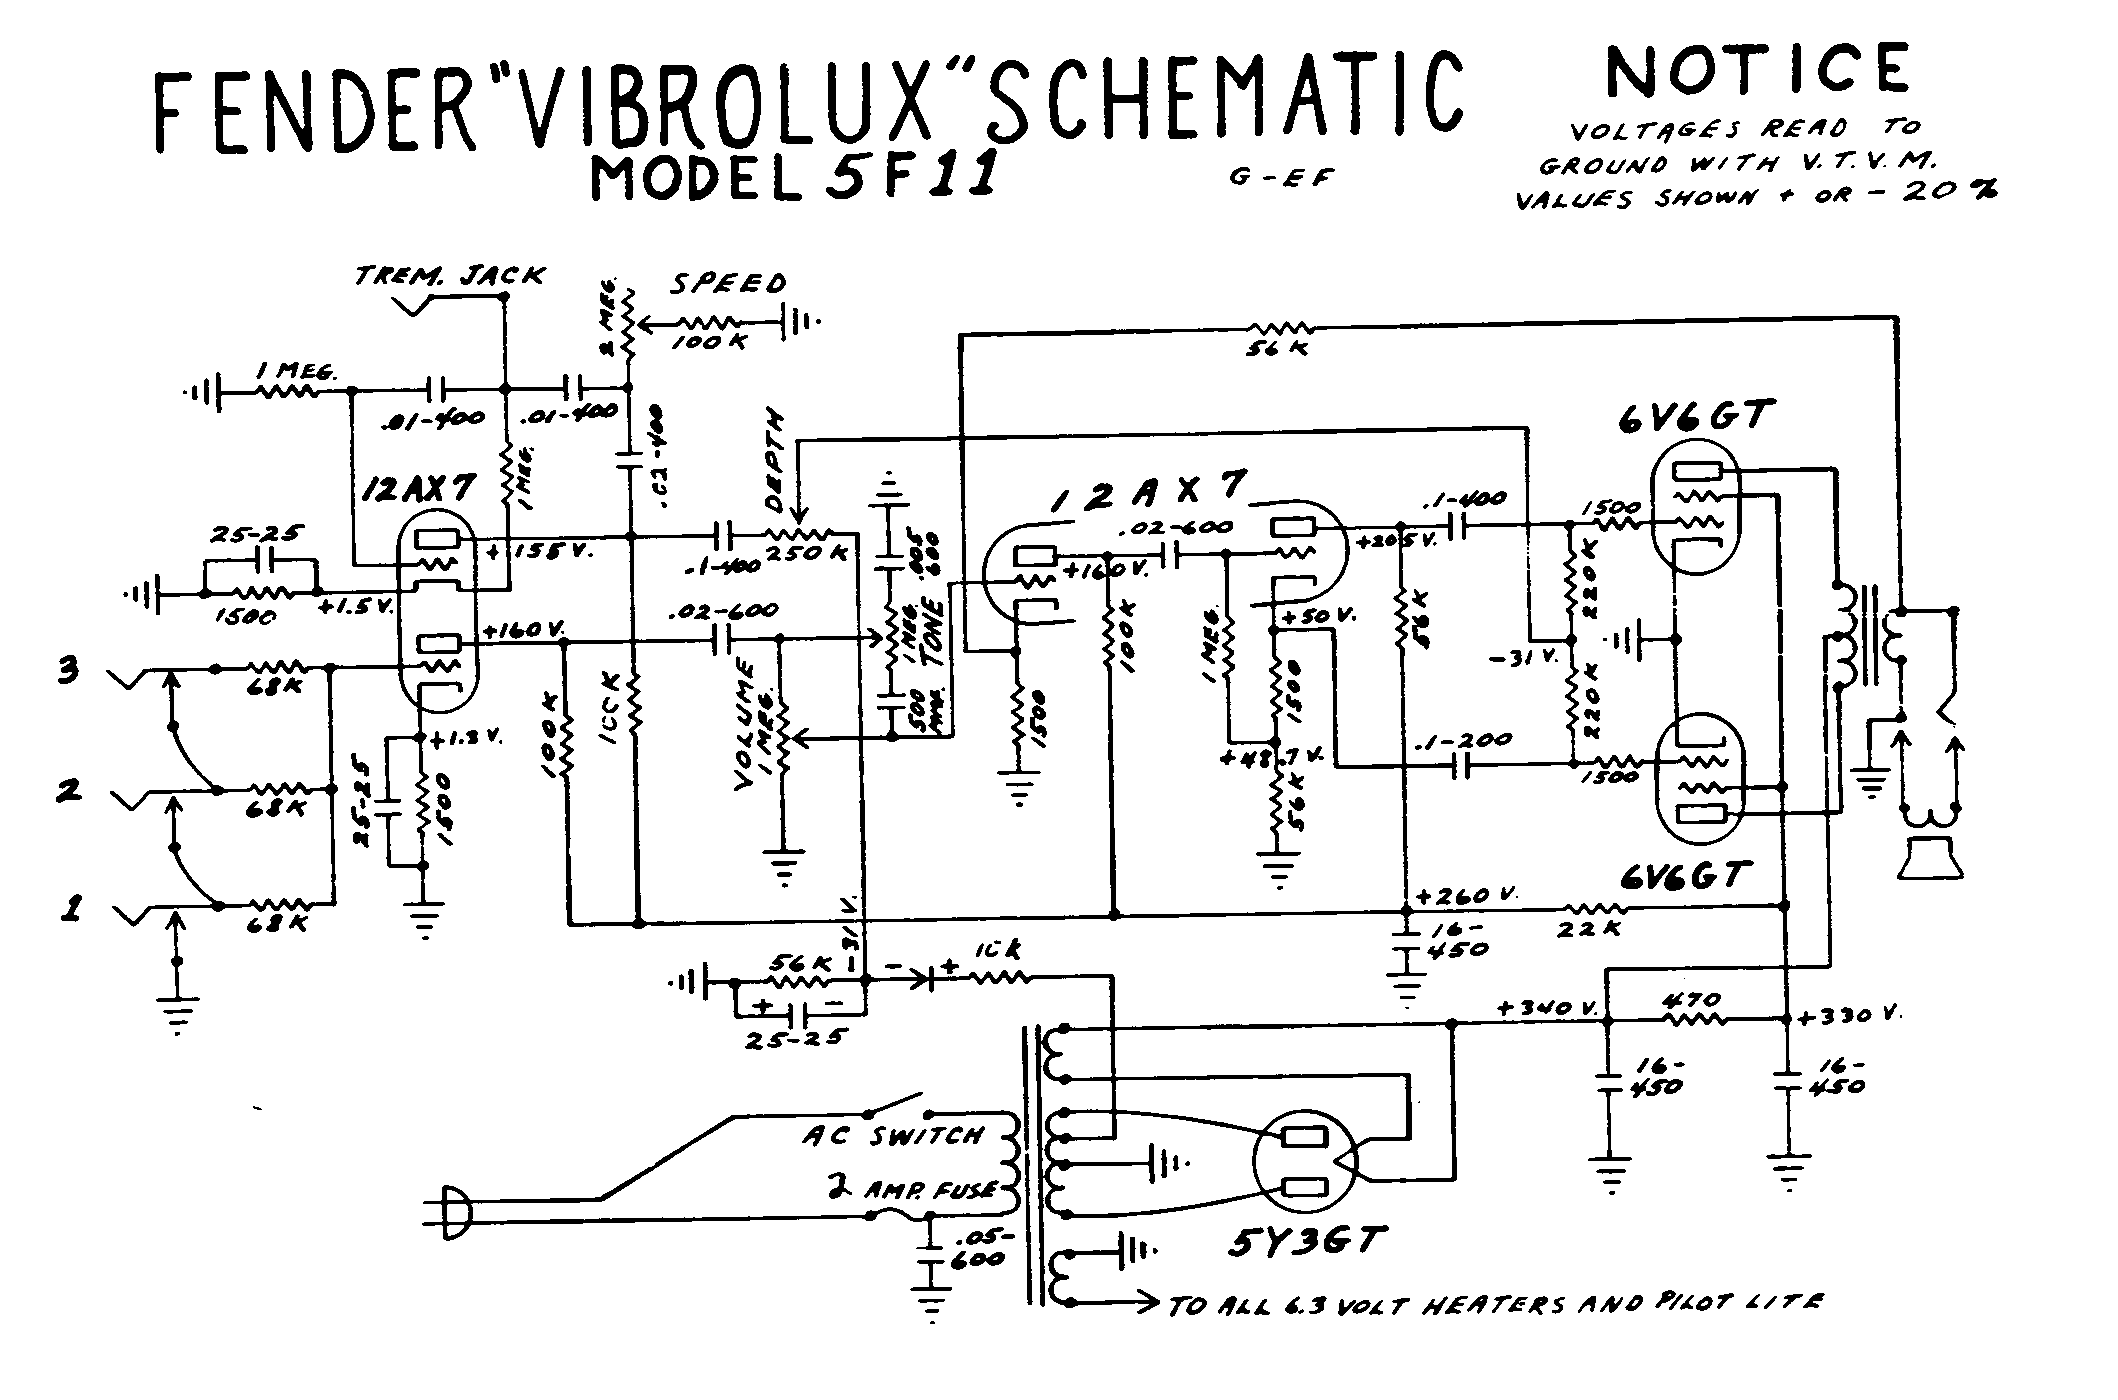 Fender Vibrolux 5E11 Schematic